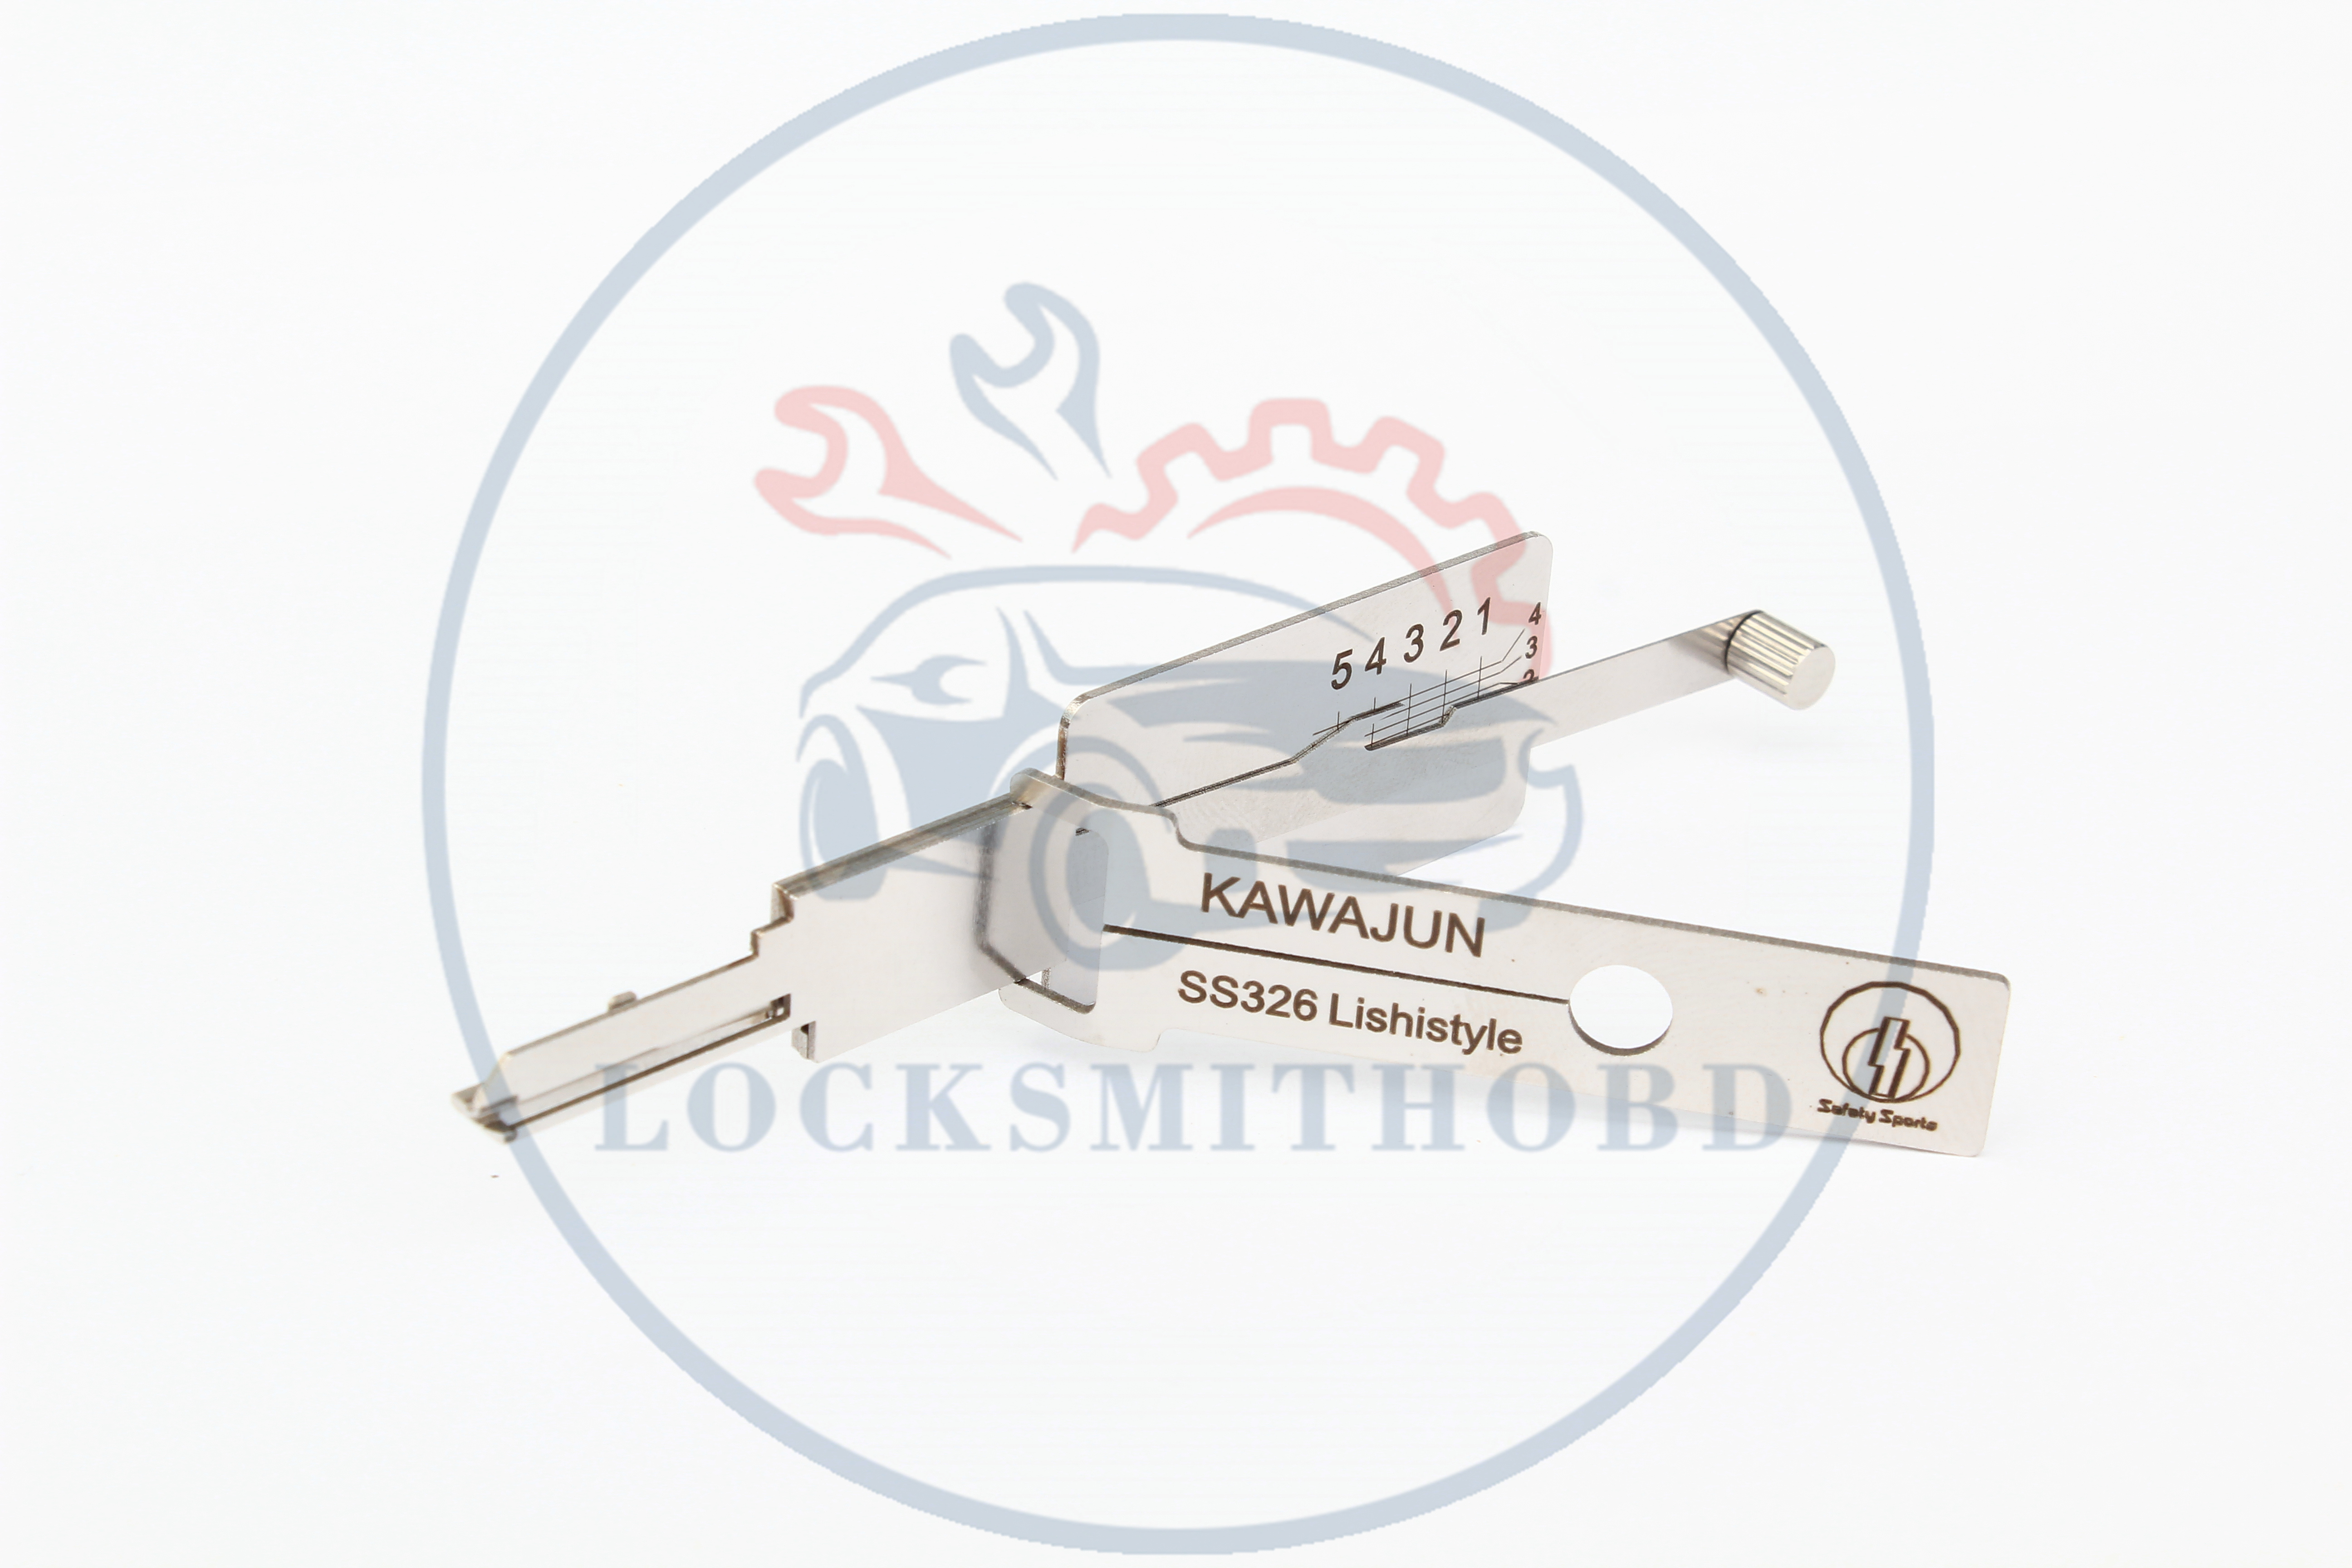 Discount Lishi Style SS326 KAWAJUN Locks Opener tool 2 in 1 Tools Repair lockmsith tools For Japan lock